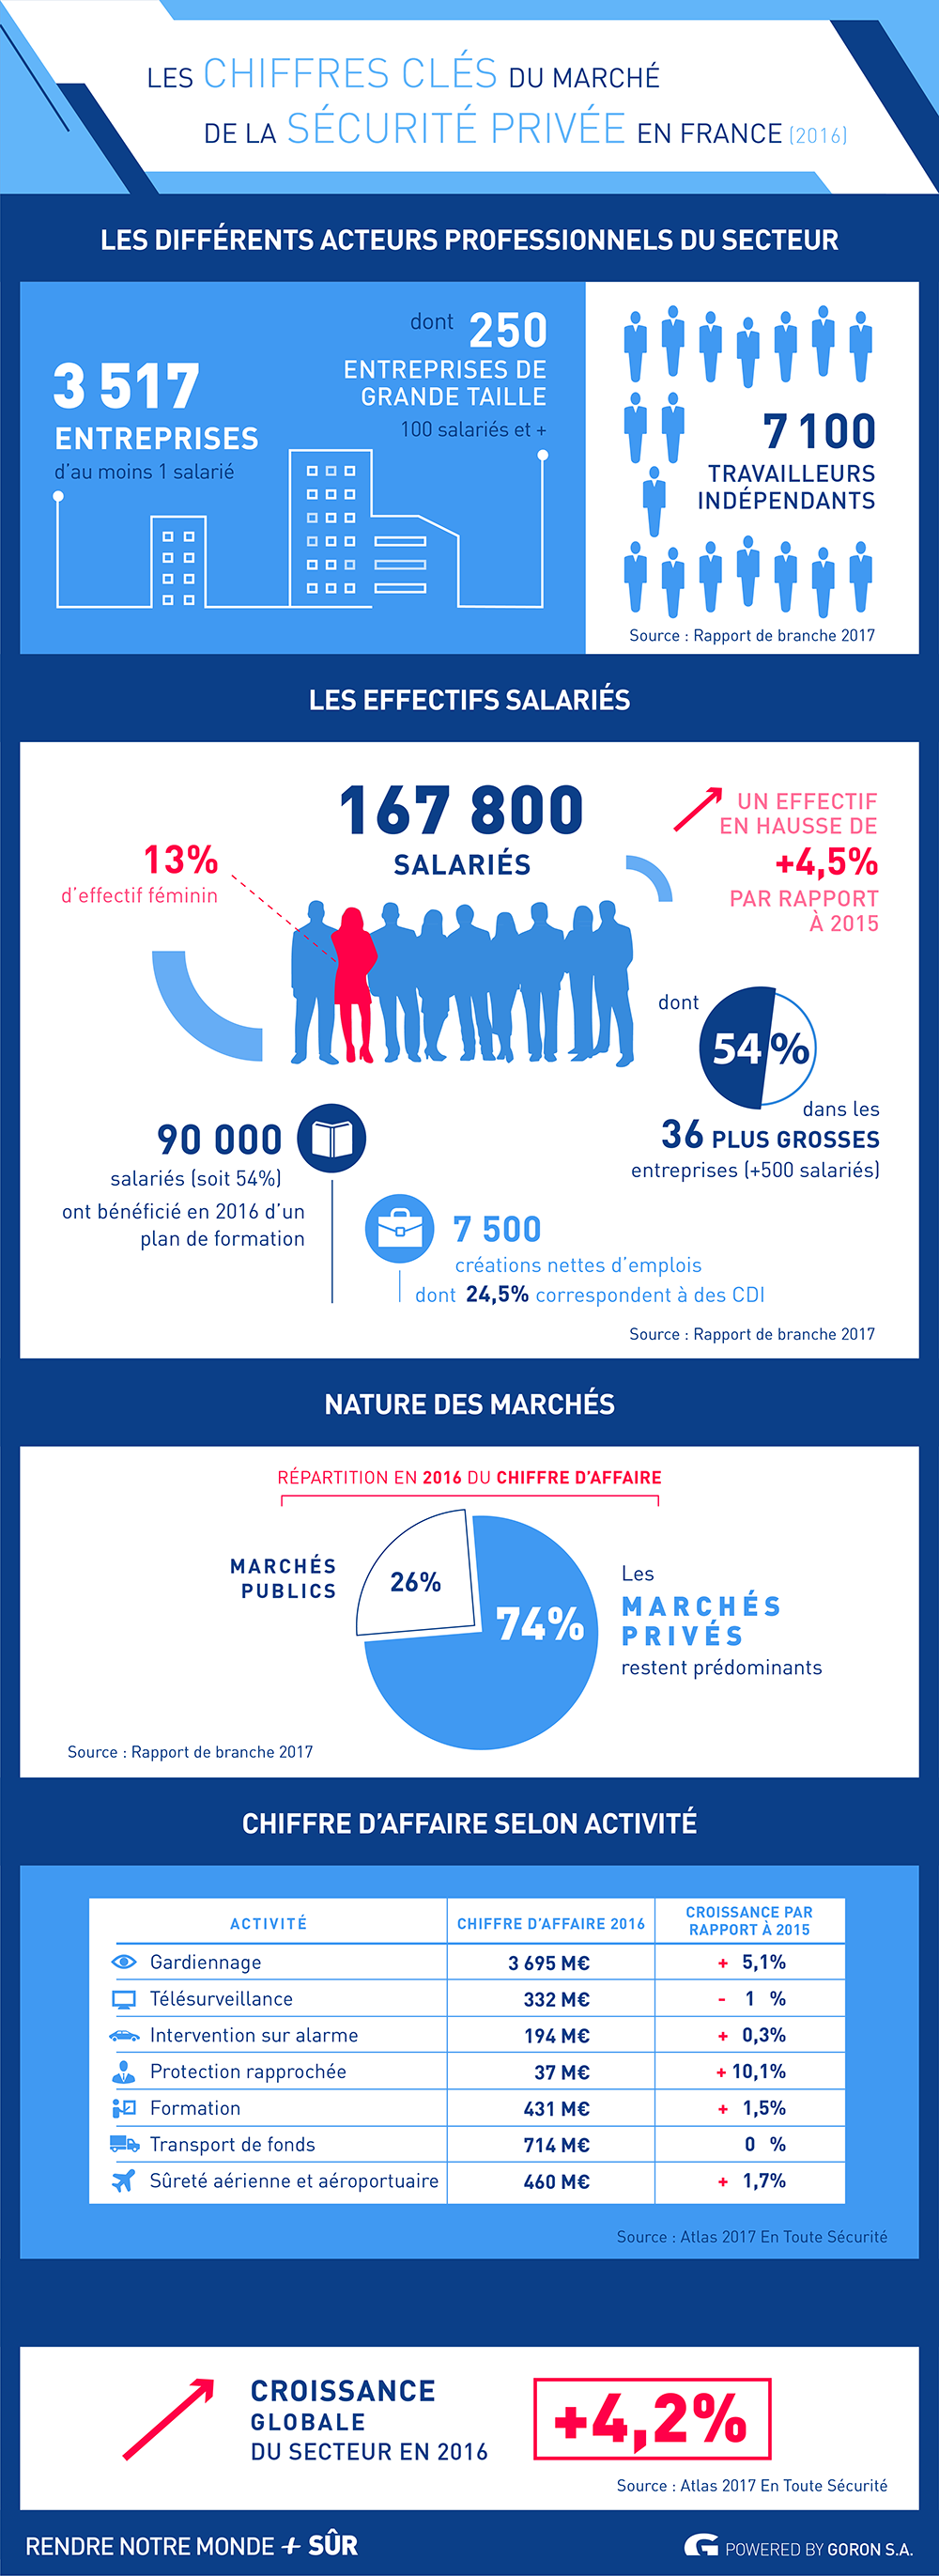 Les chiffres clÃ©s du marchÃ© de la sÃ©curitÃ© privÃ©e en France â RNMPS